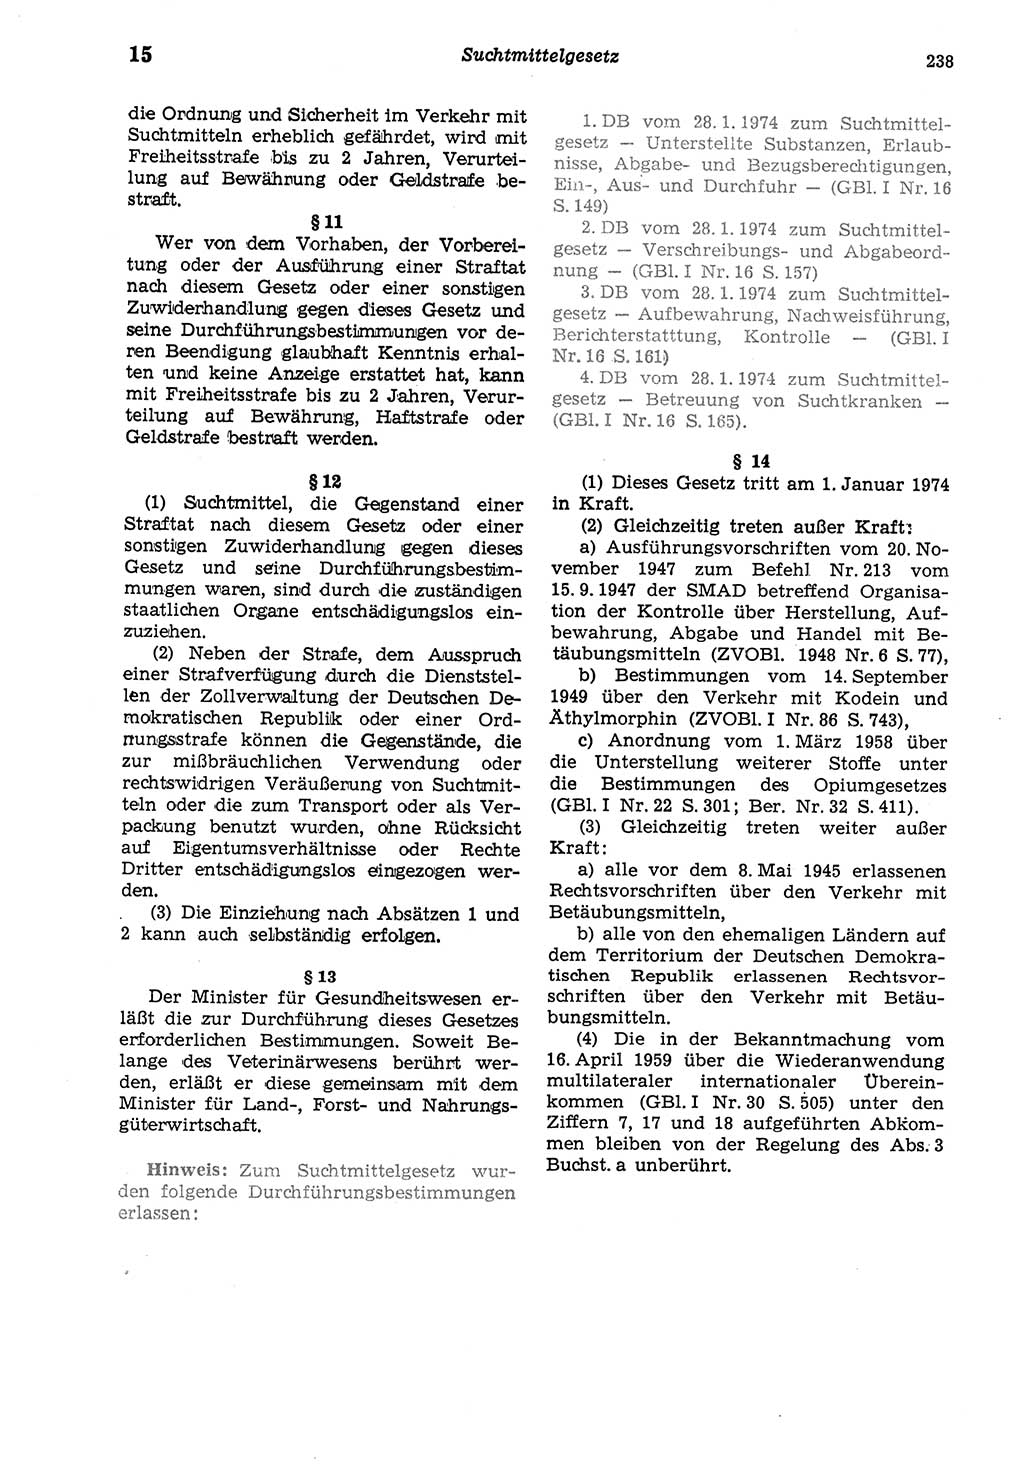 Strafgesetzbuch (StGB) der Deutschen Demokratischen Republik (DDR) und angrenzende Gesetze und Bestimmungen 1975, Seite 238 (StGB DDR Ges. Best. 1975, S. 238)